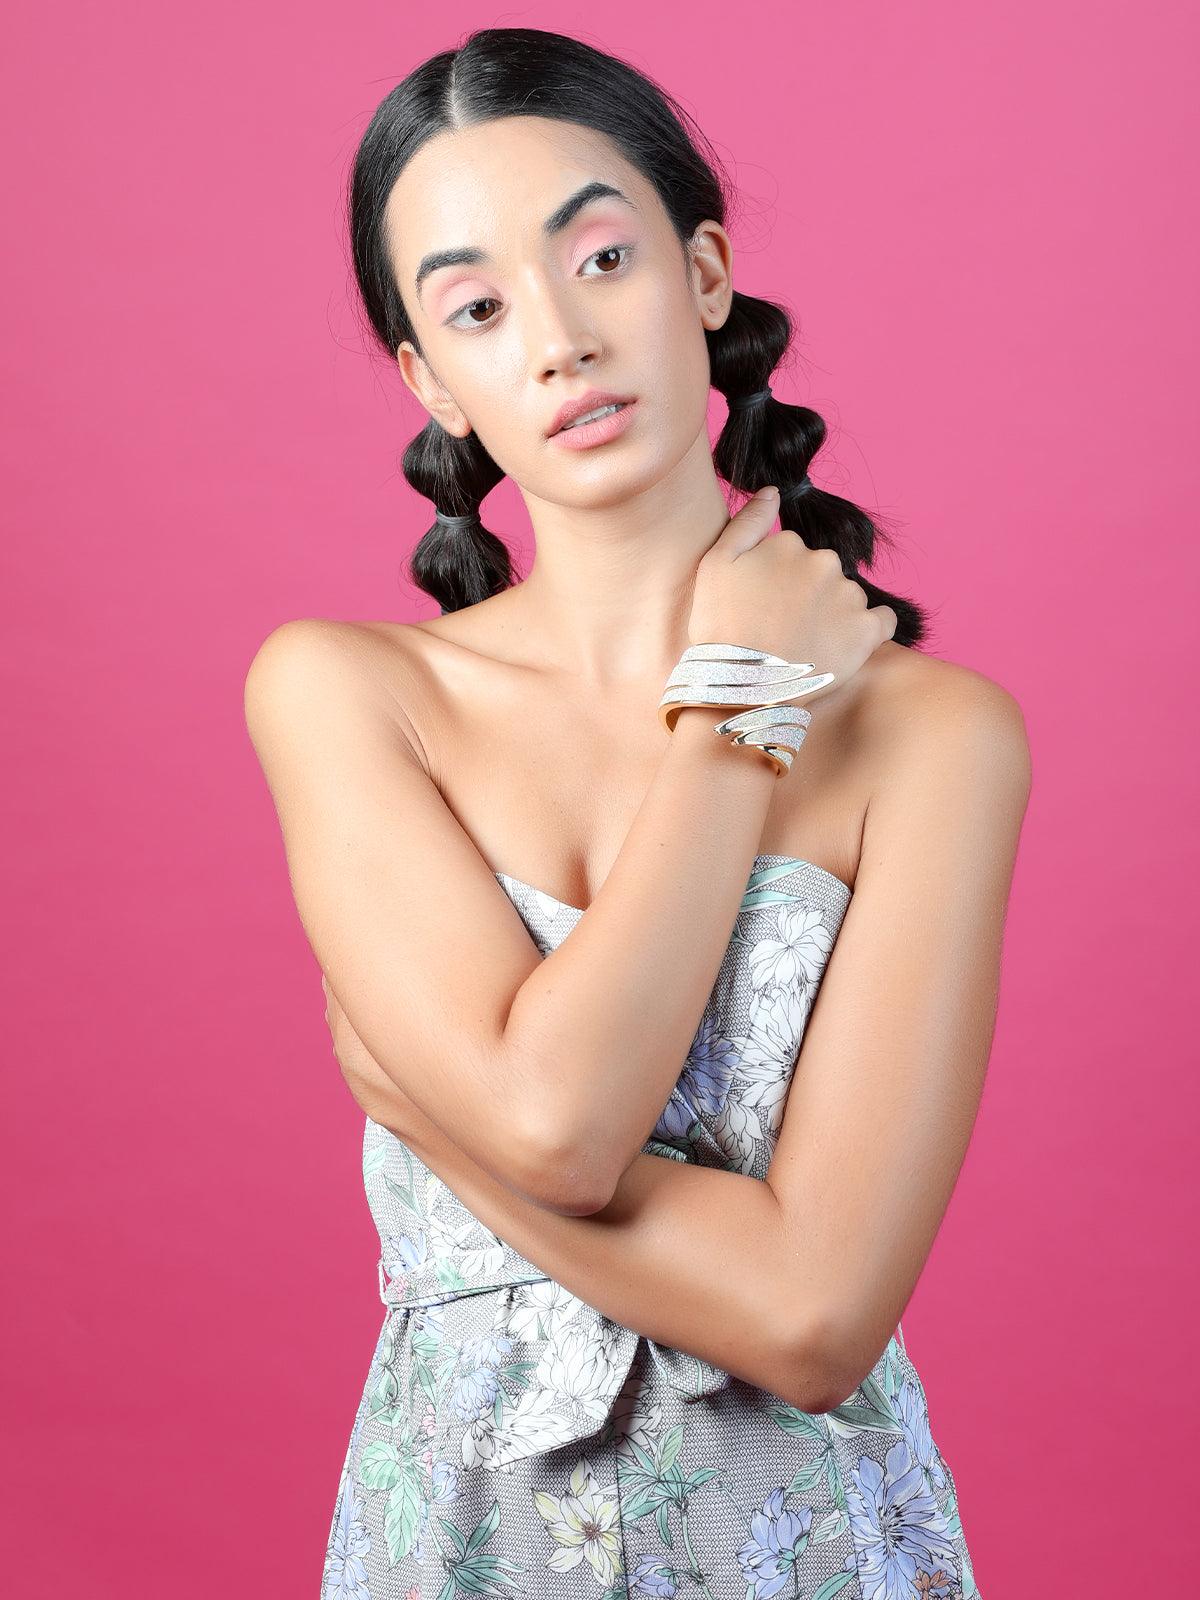 Women's Gorgeous Multicoloured Shimmering Designer Bracelet - Odette